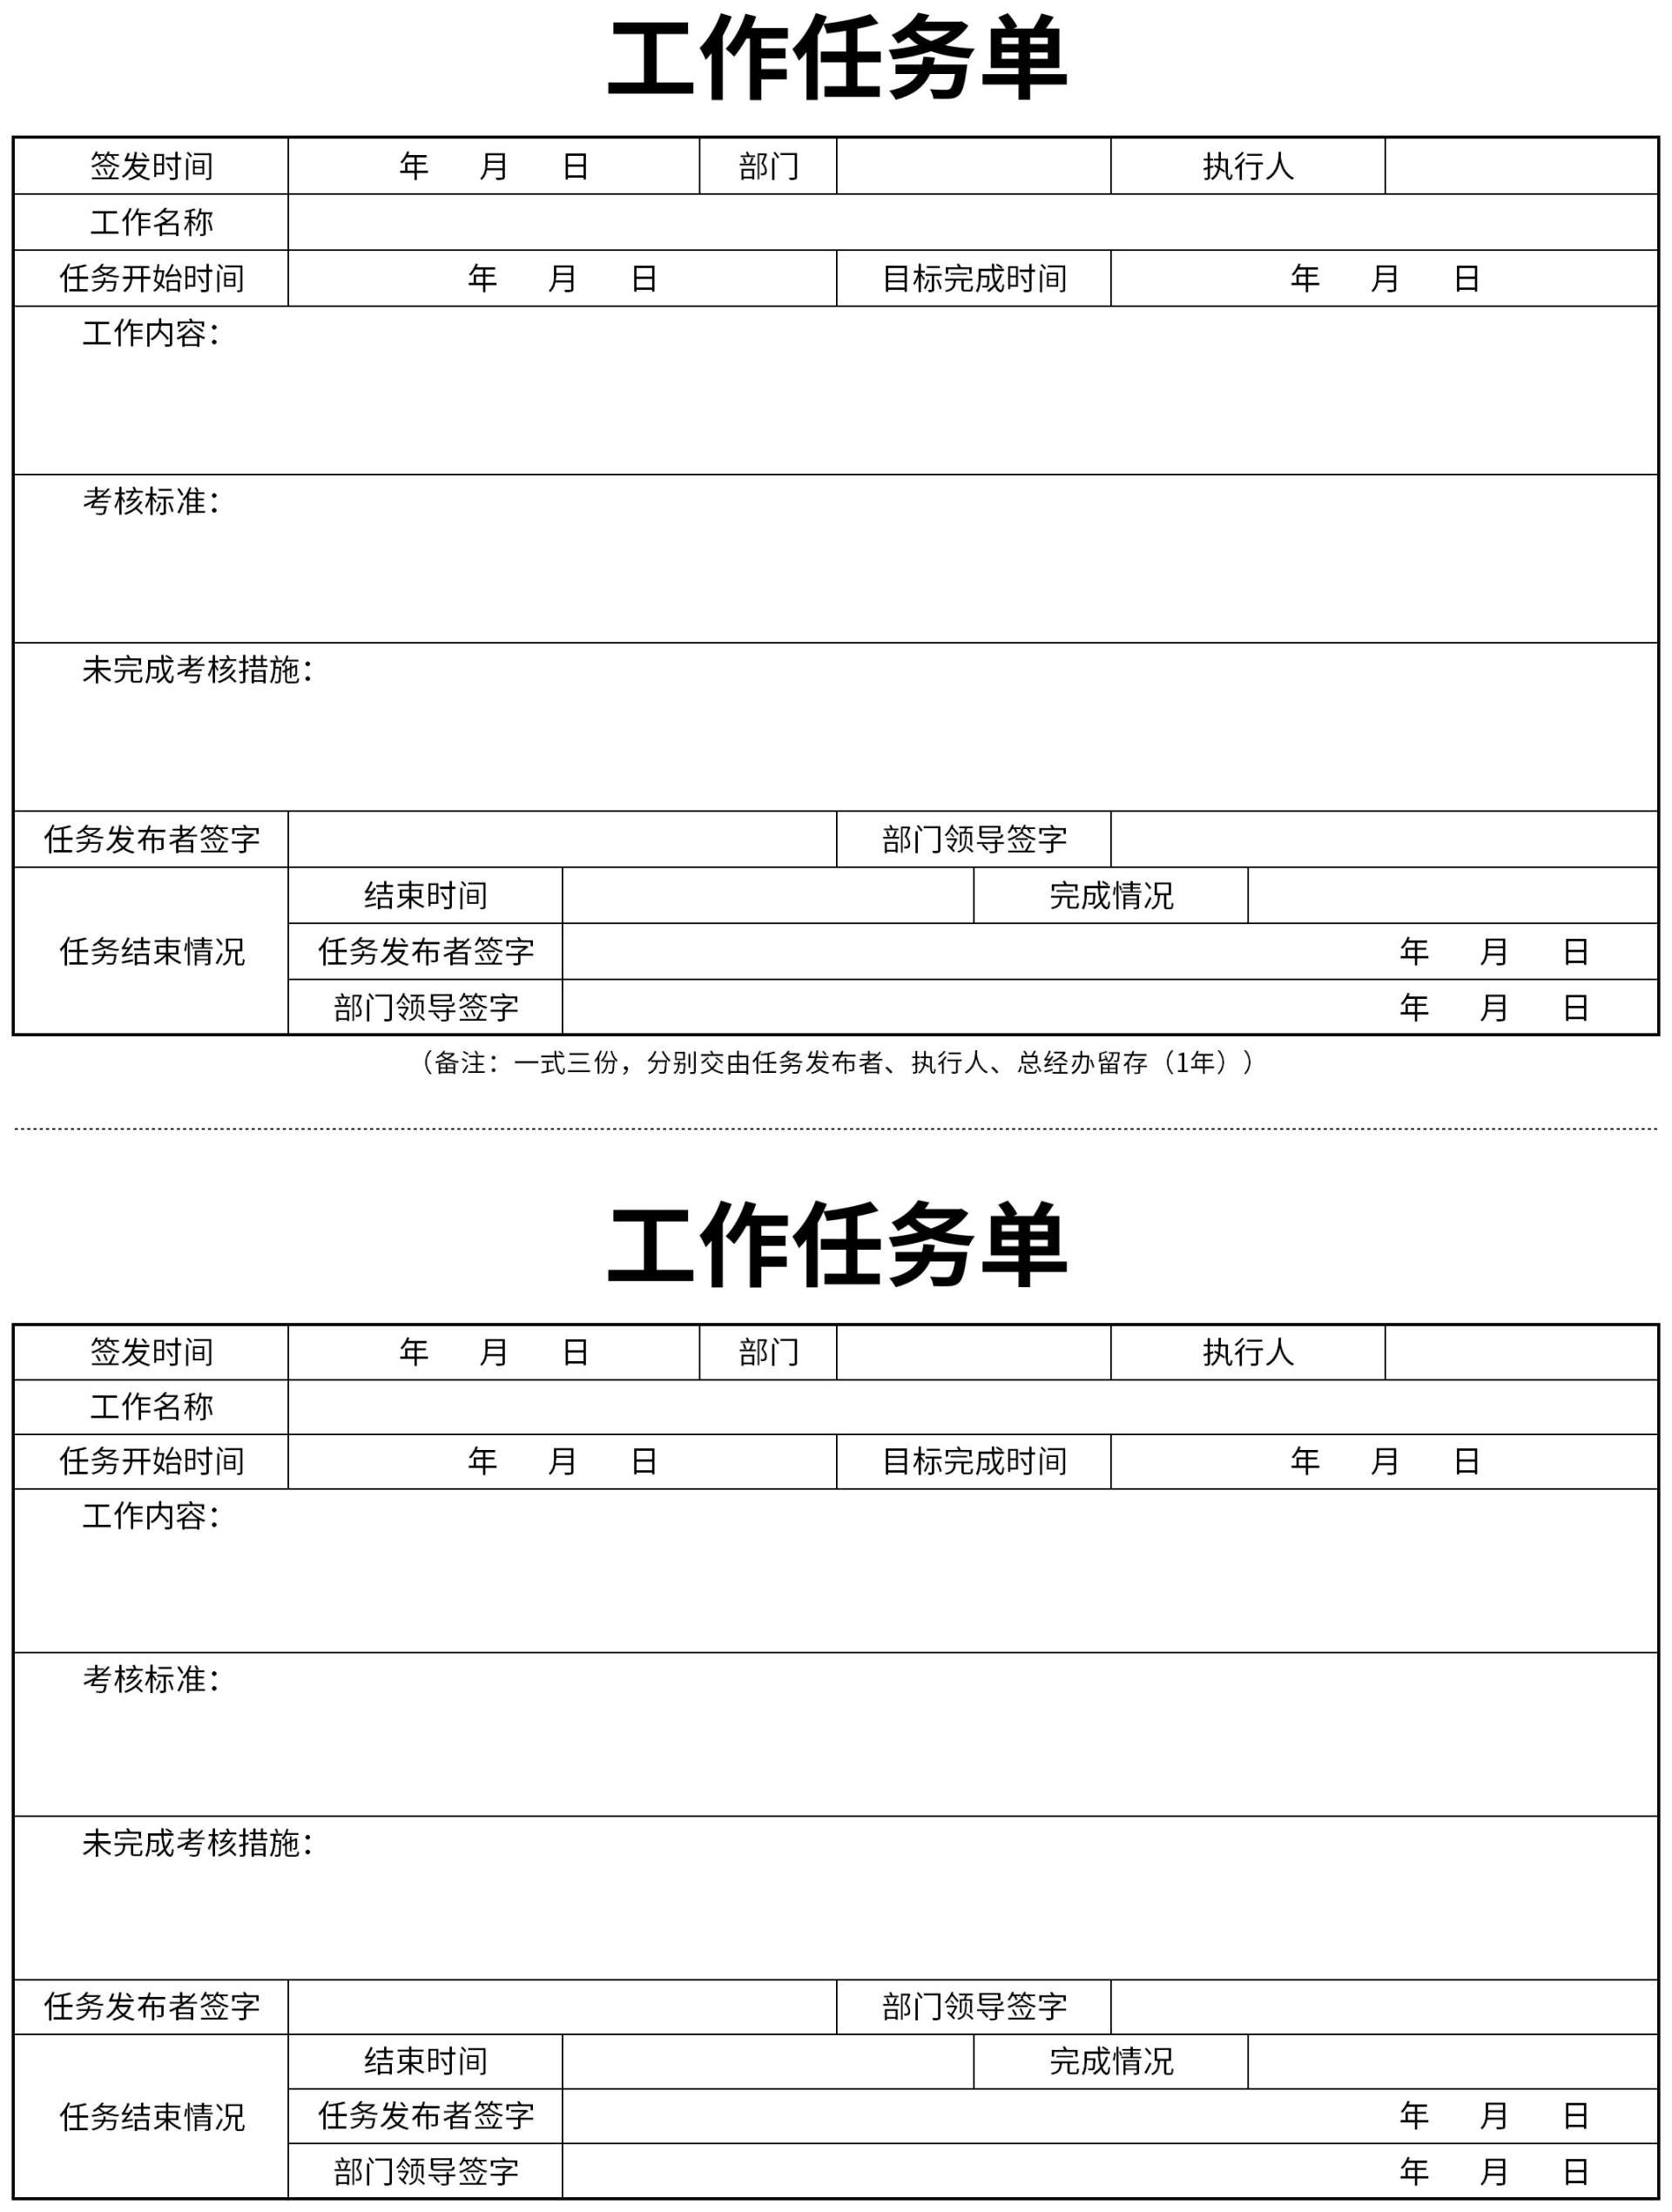 工作票14张 - 广州市创星教育培训中心